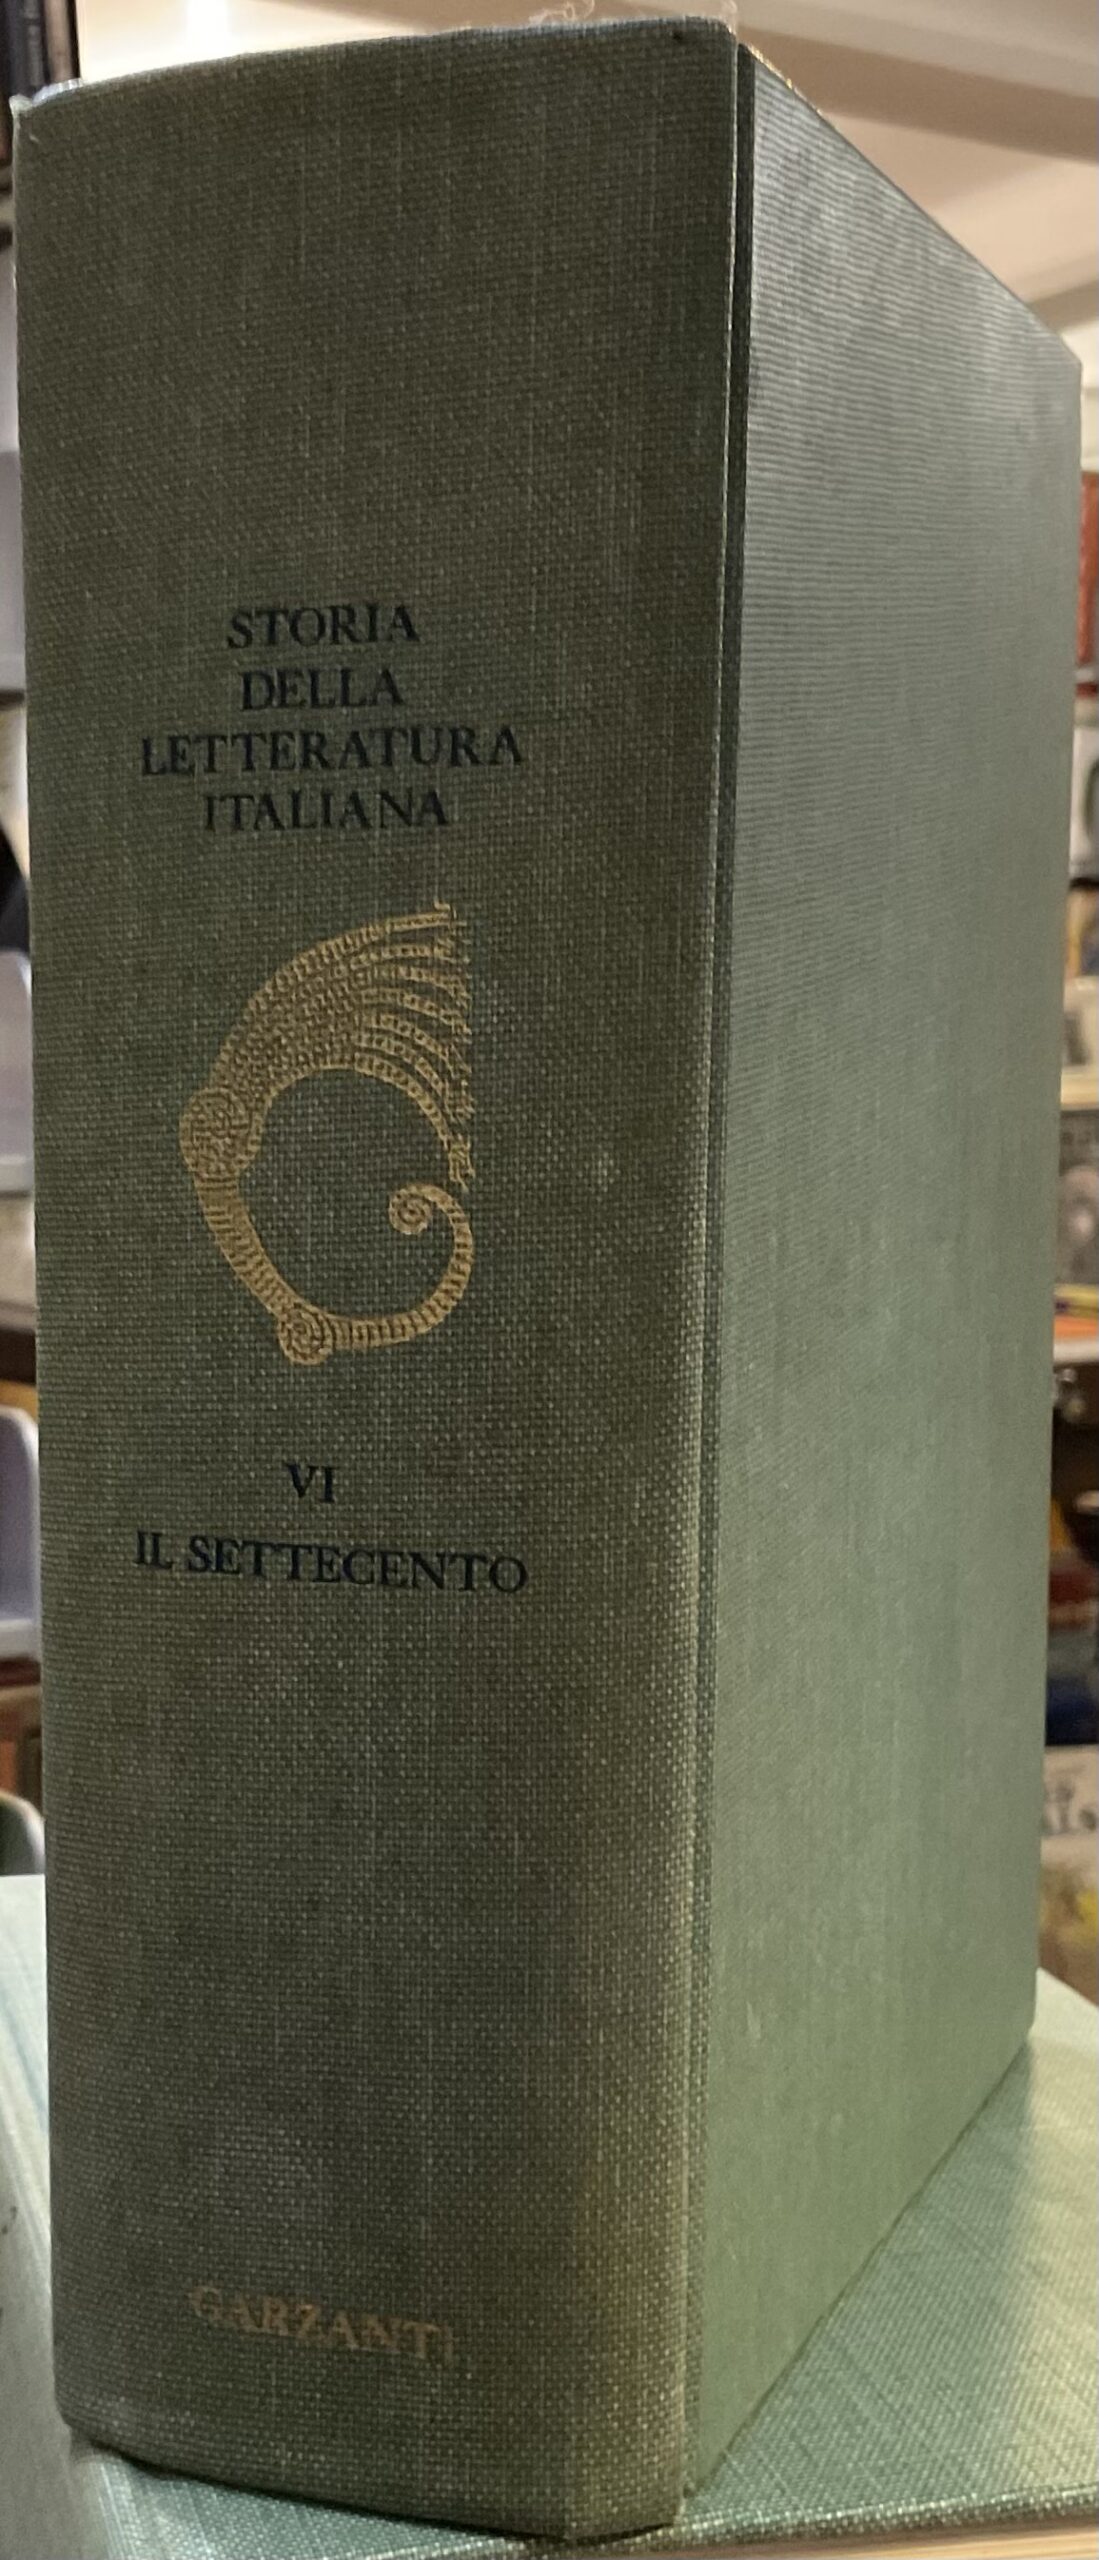 Storia della letteratura italiana. Volume VI: Il Settecento